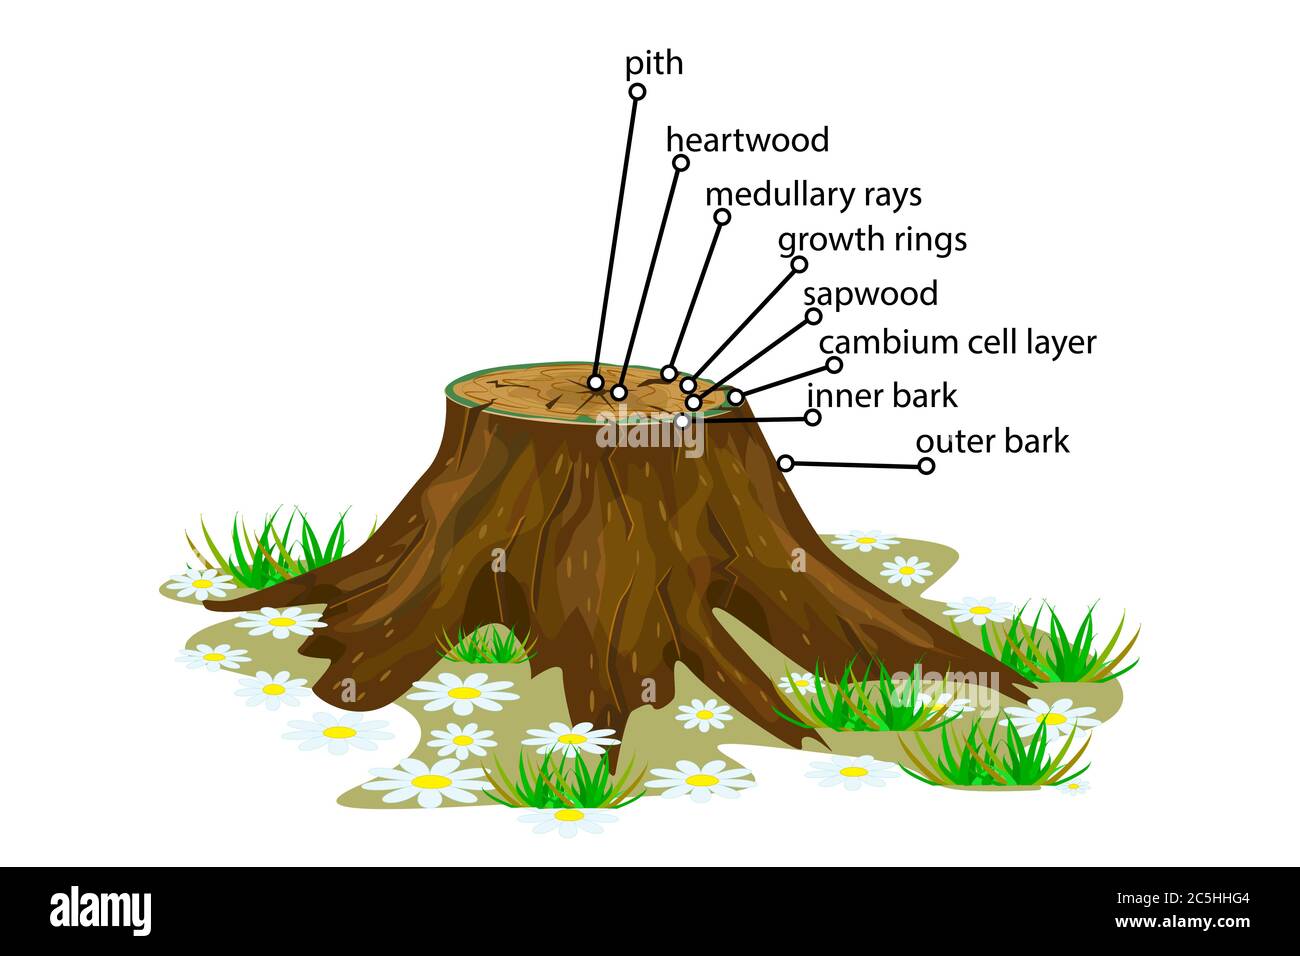 Anatomie d'un arbre. Structure de la coupe des couches de l'arborescence en coupe transversale. Schéma des couches de tronc d'arbre. Coupe transversale de tiges ligneuses. Vecteur de brut Illustration de Vecteur